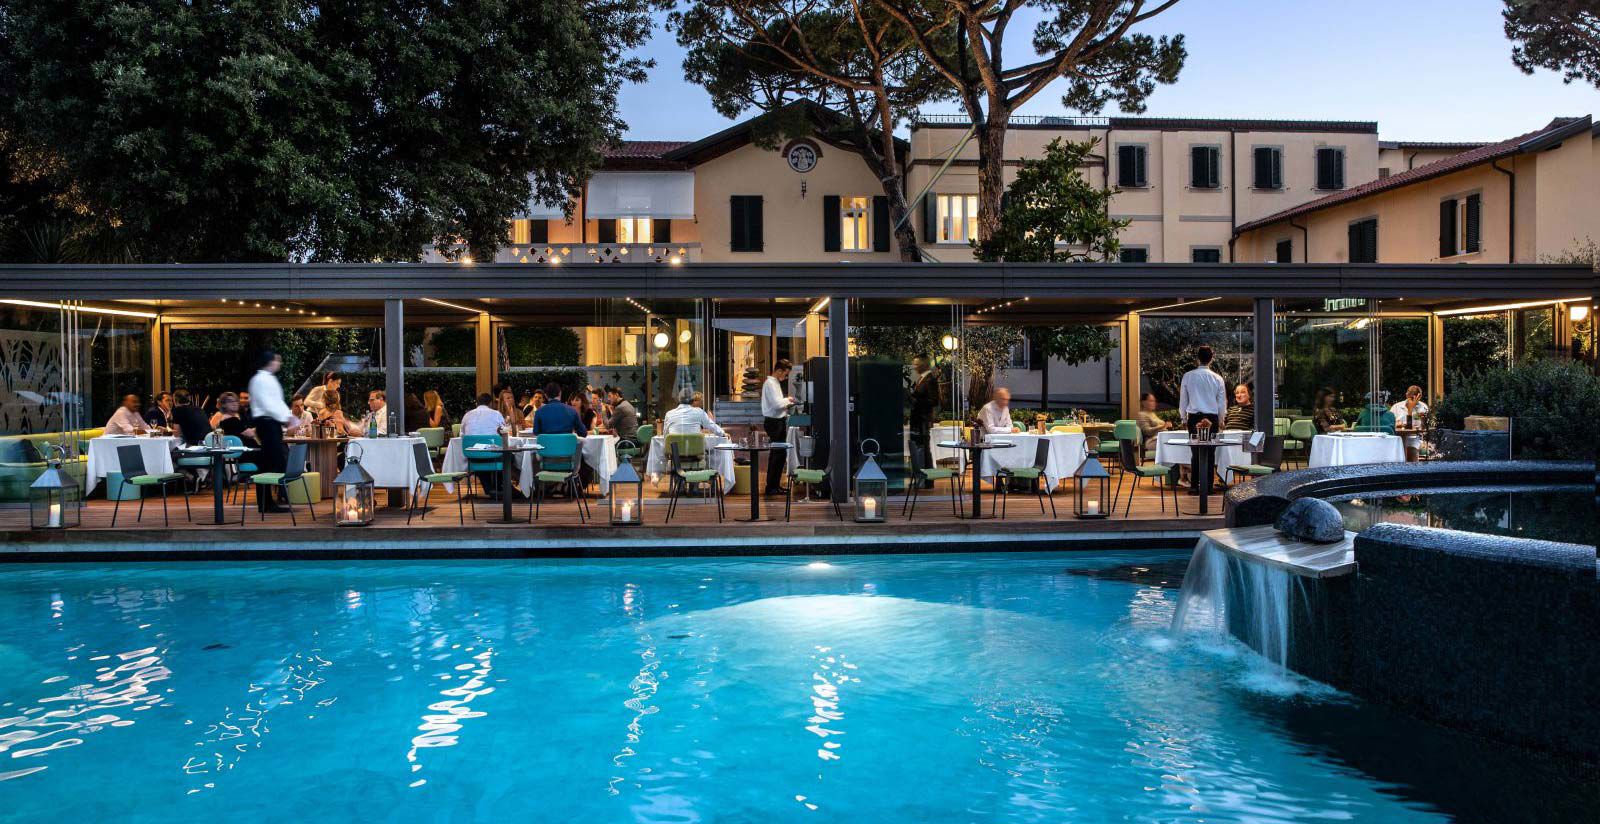 Hotel Byron - Hotel di lusso per famiglie in Toscana 4